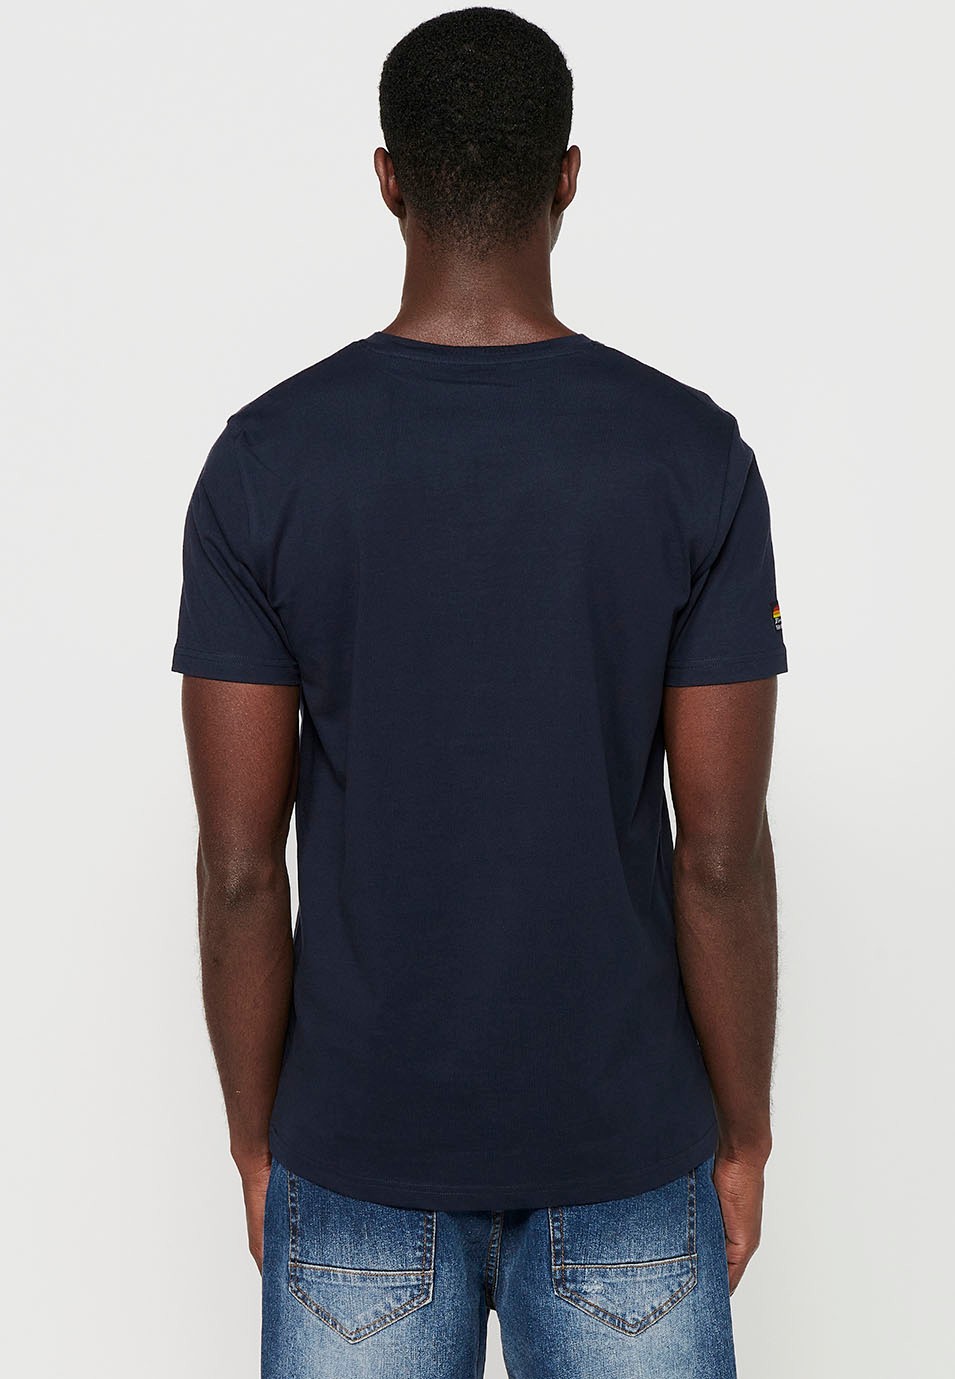 Camiseta de manga corta de algodón estampado delantero bicicletas, color navy para hombre 7